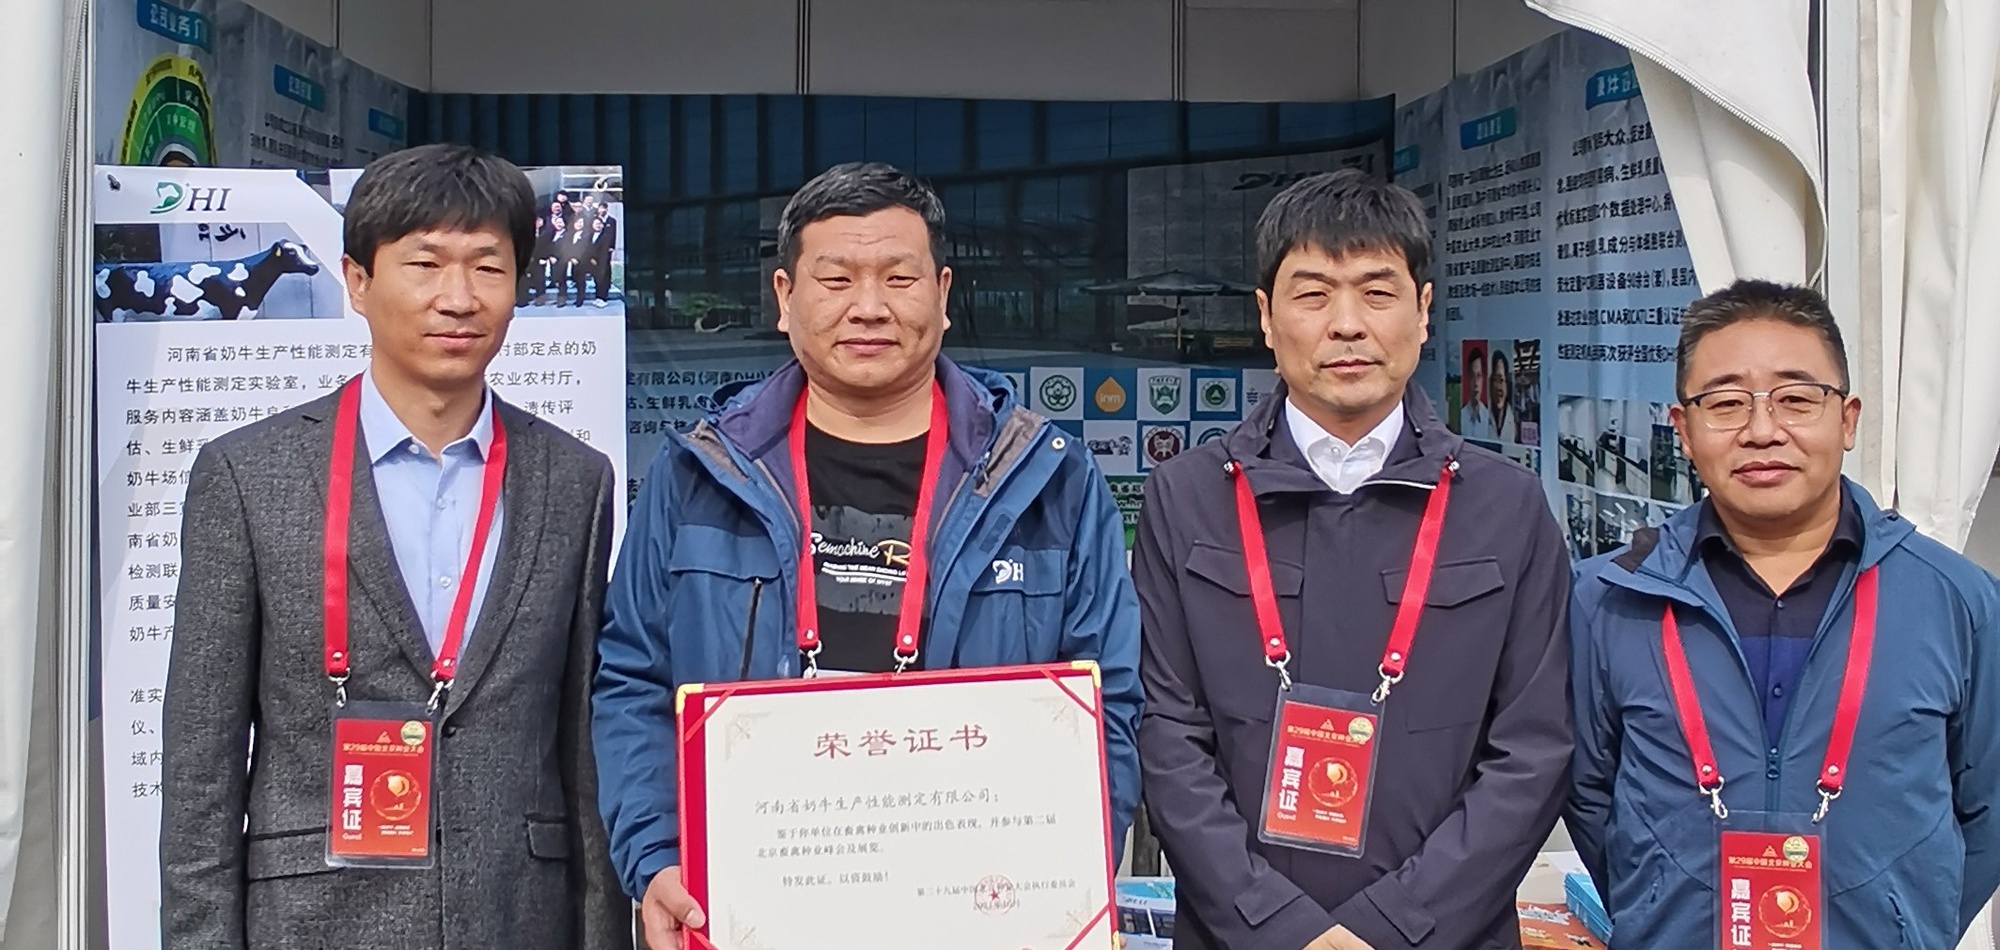 河南DHI参加第二十九届中国北京种业大会——第二届北京畜禽种业峰会布展 10.19